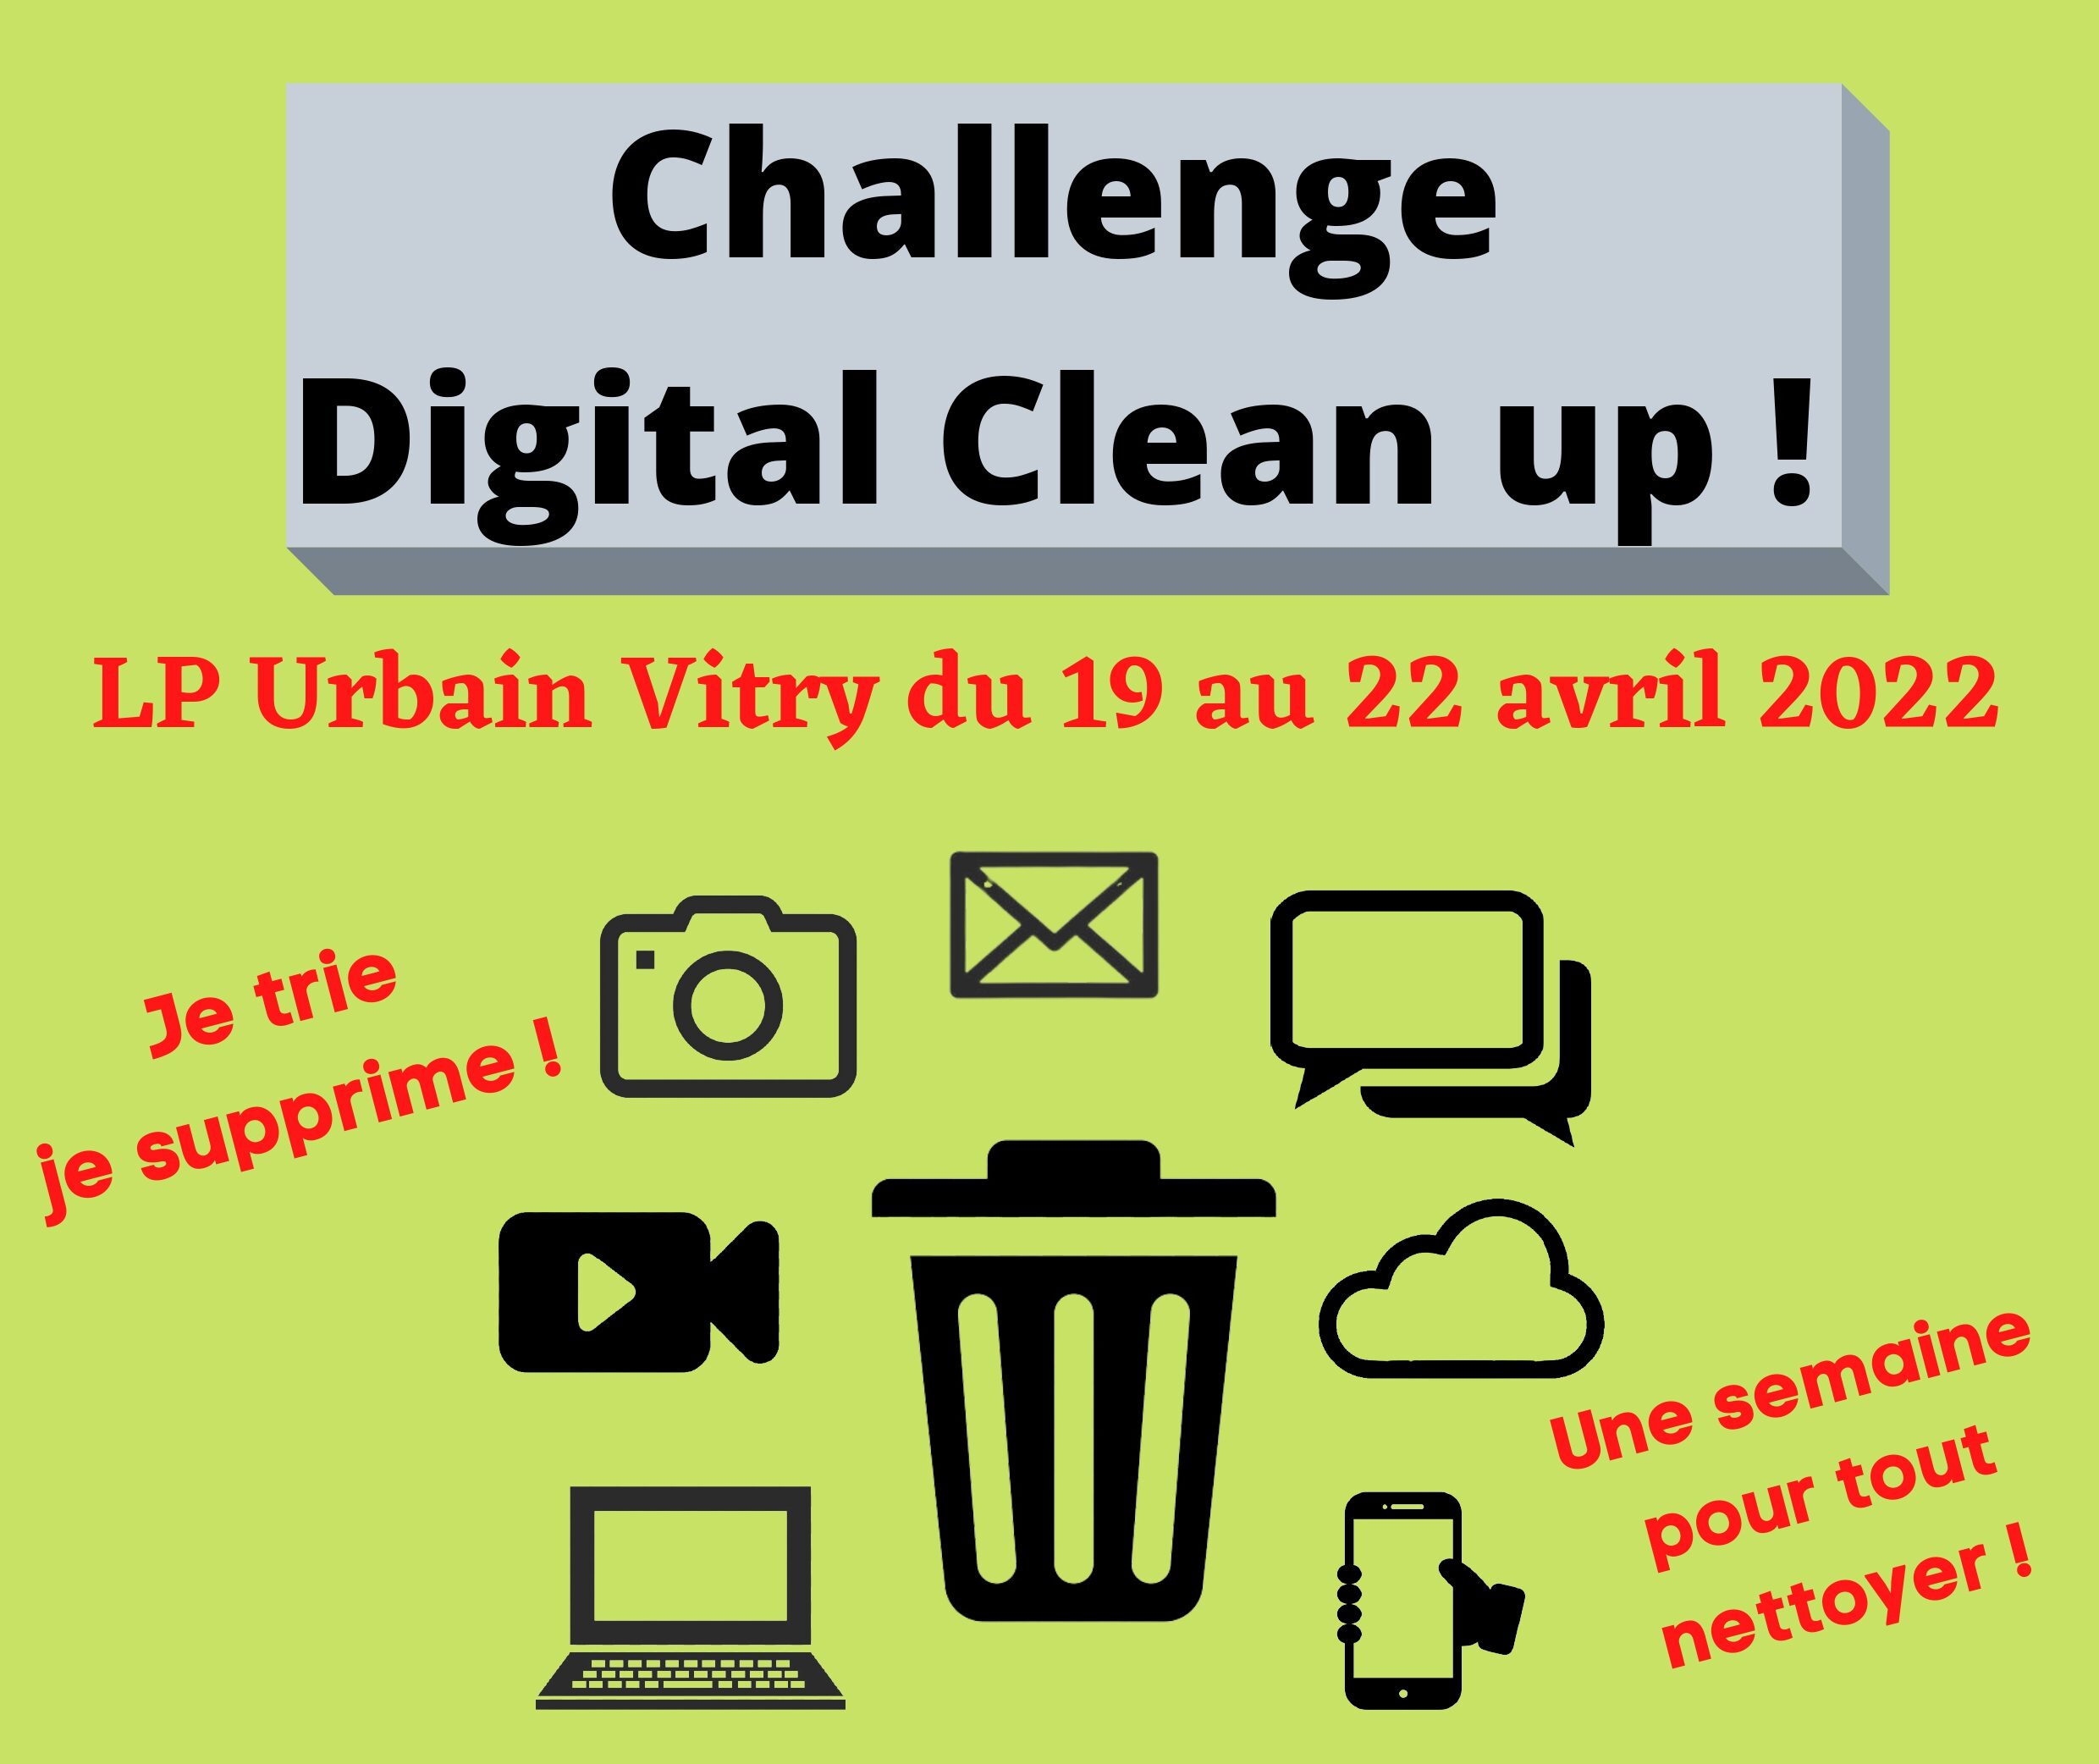 Challenge Digital Clean up ! (1)_page-0001 (1).jpg